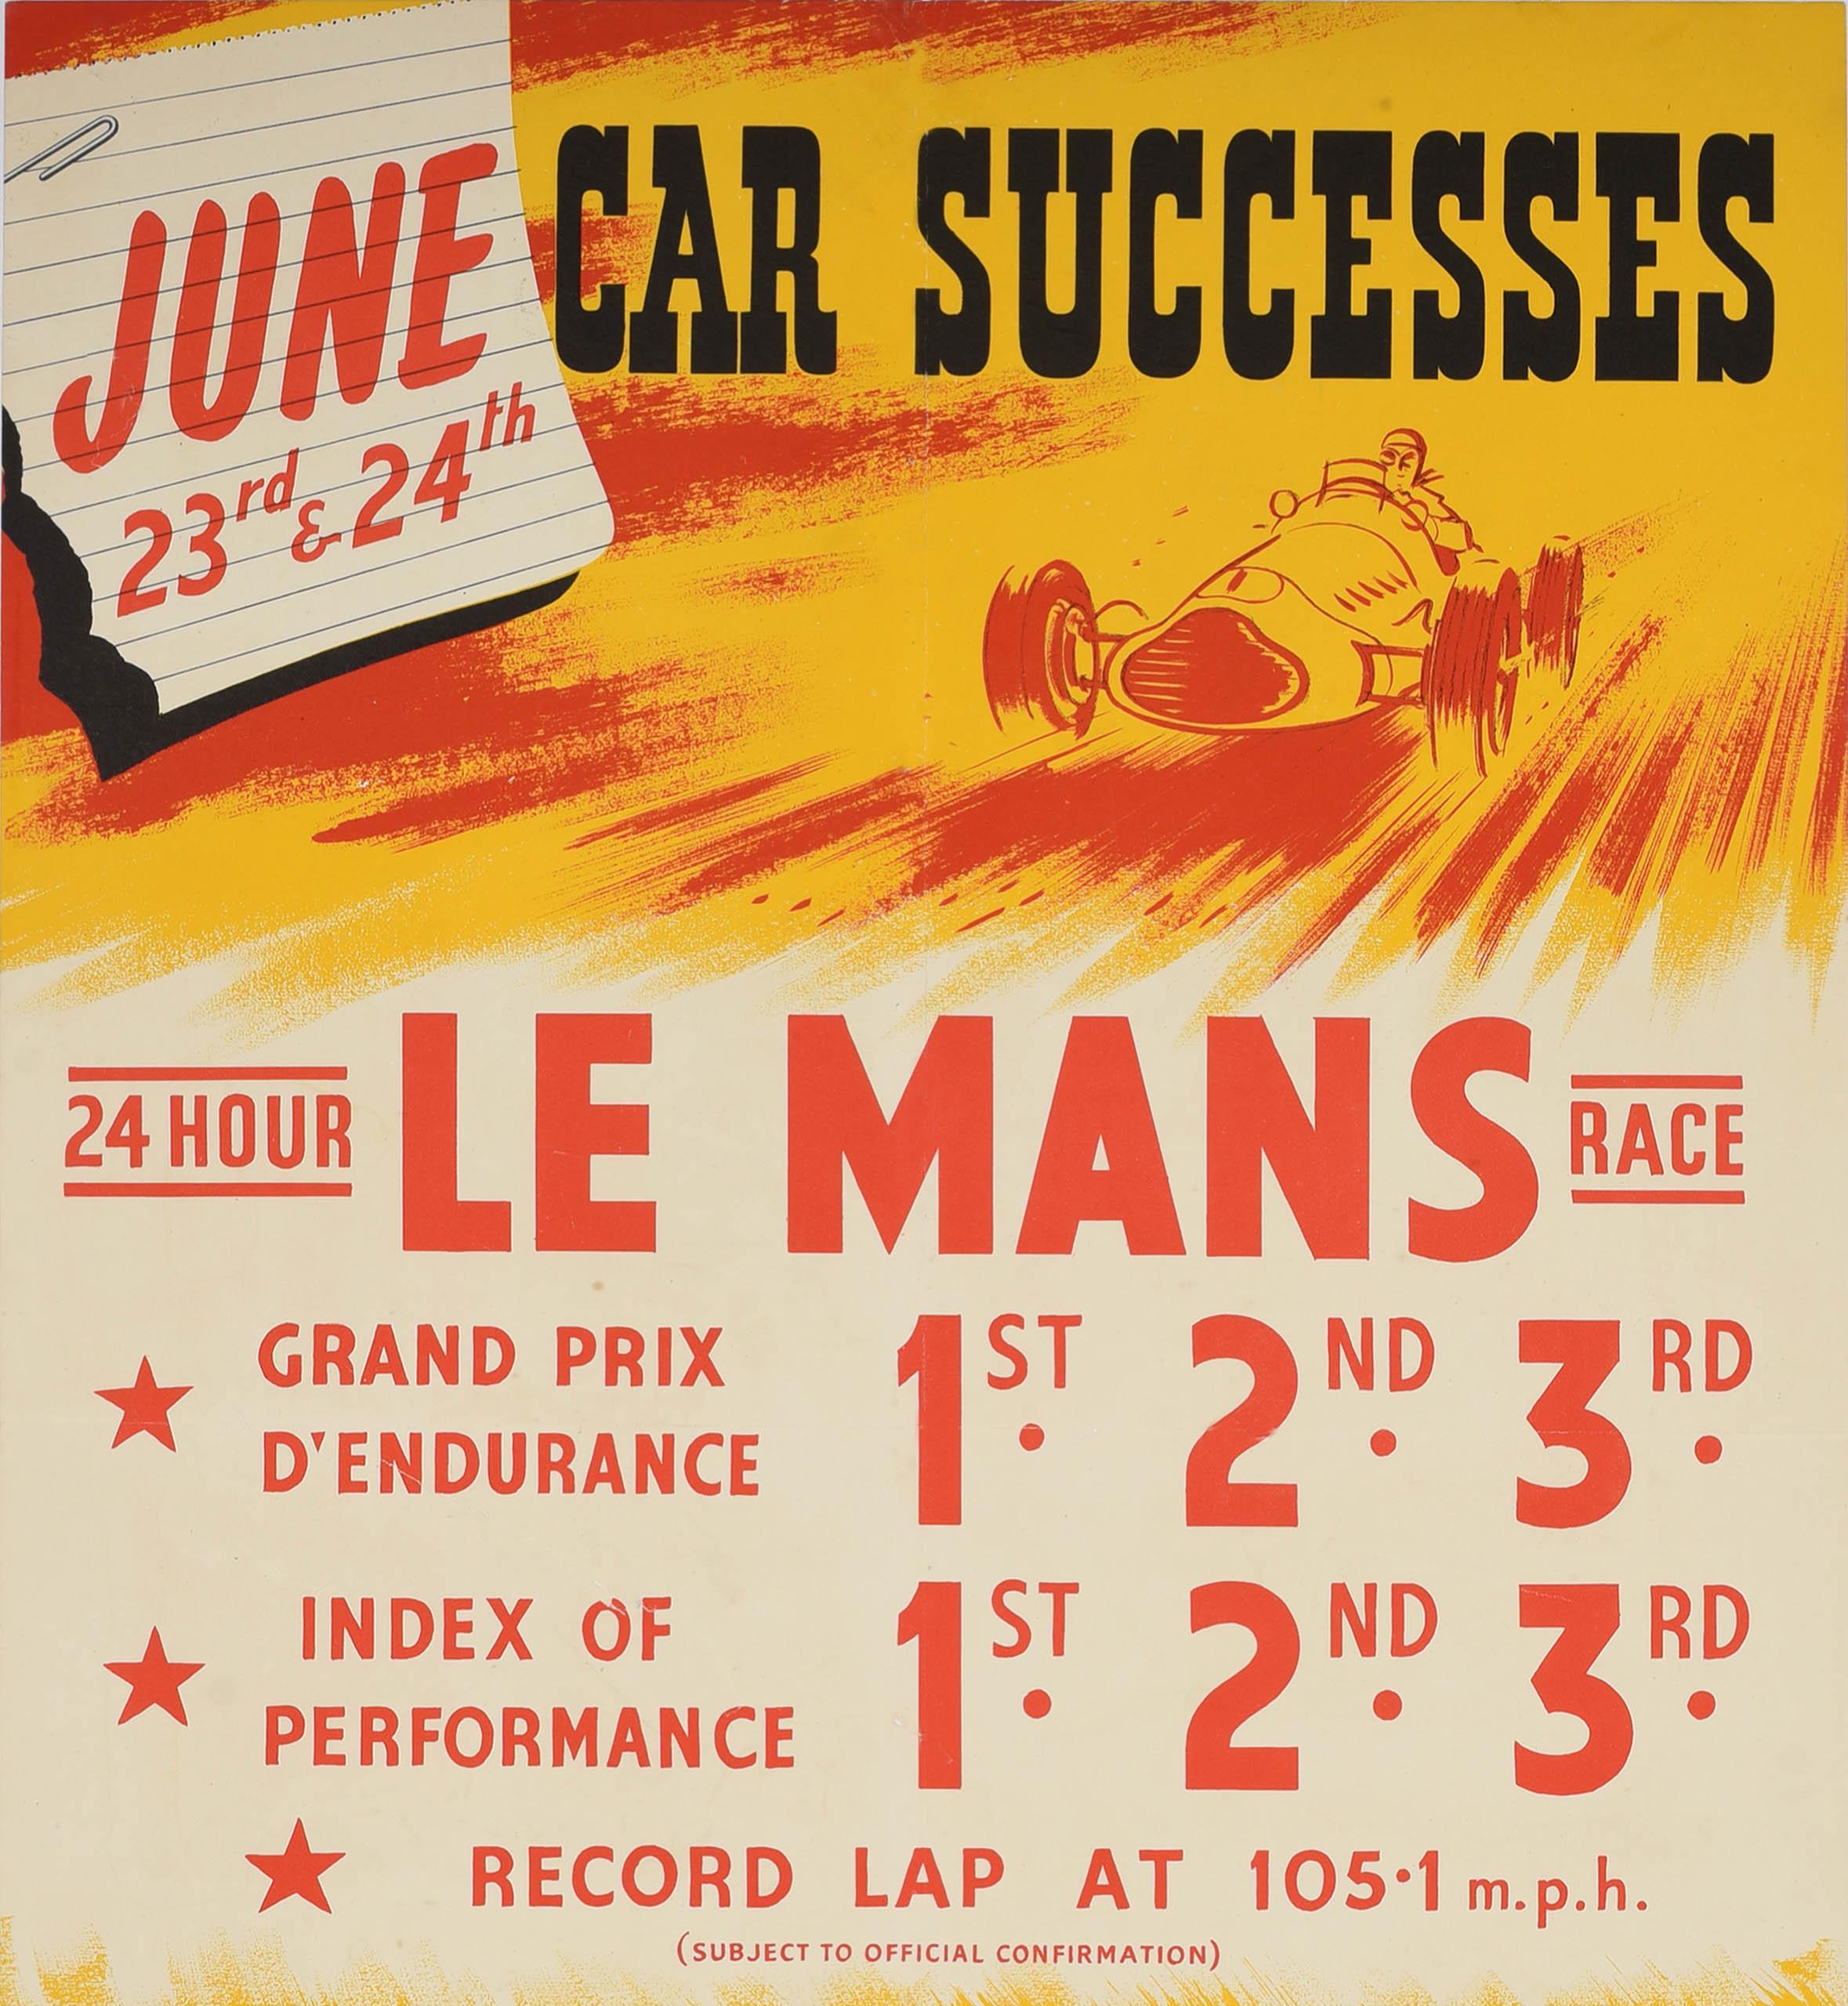 British Original Vintage Motorsport Sponsorship Poster 24 Hour Le Mans Race Dunlop Car